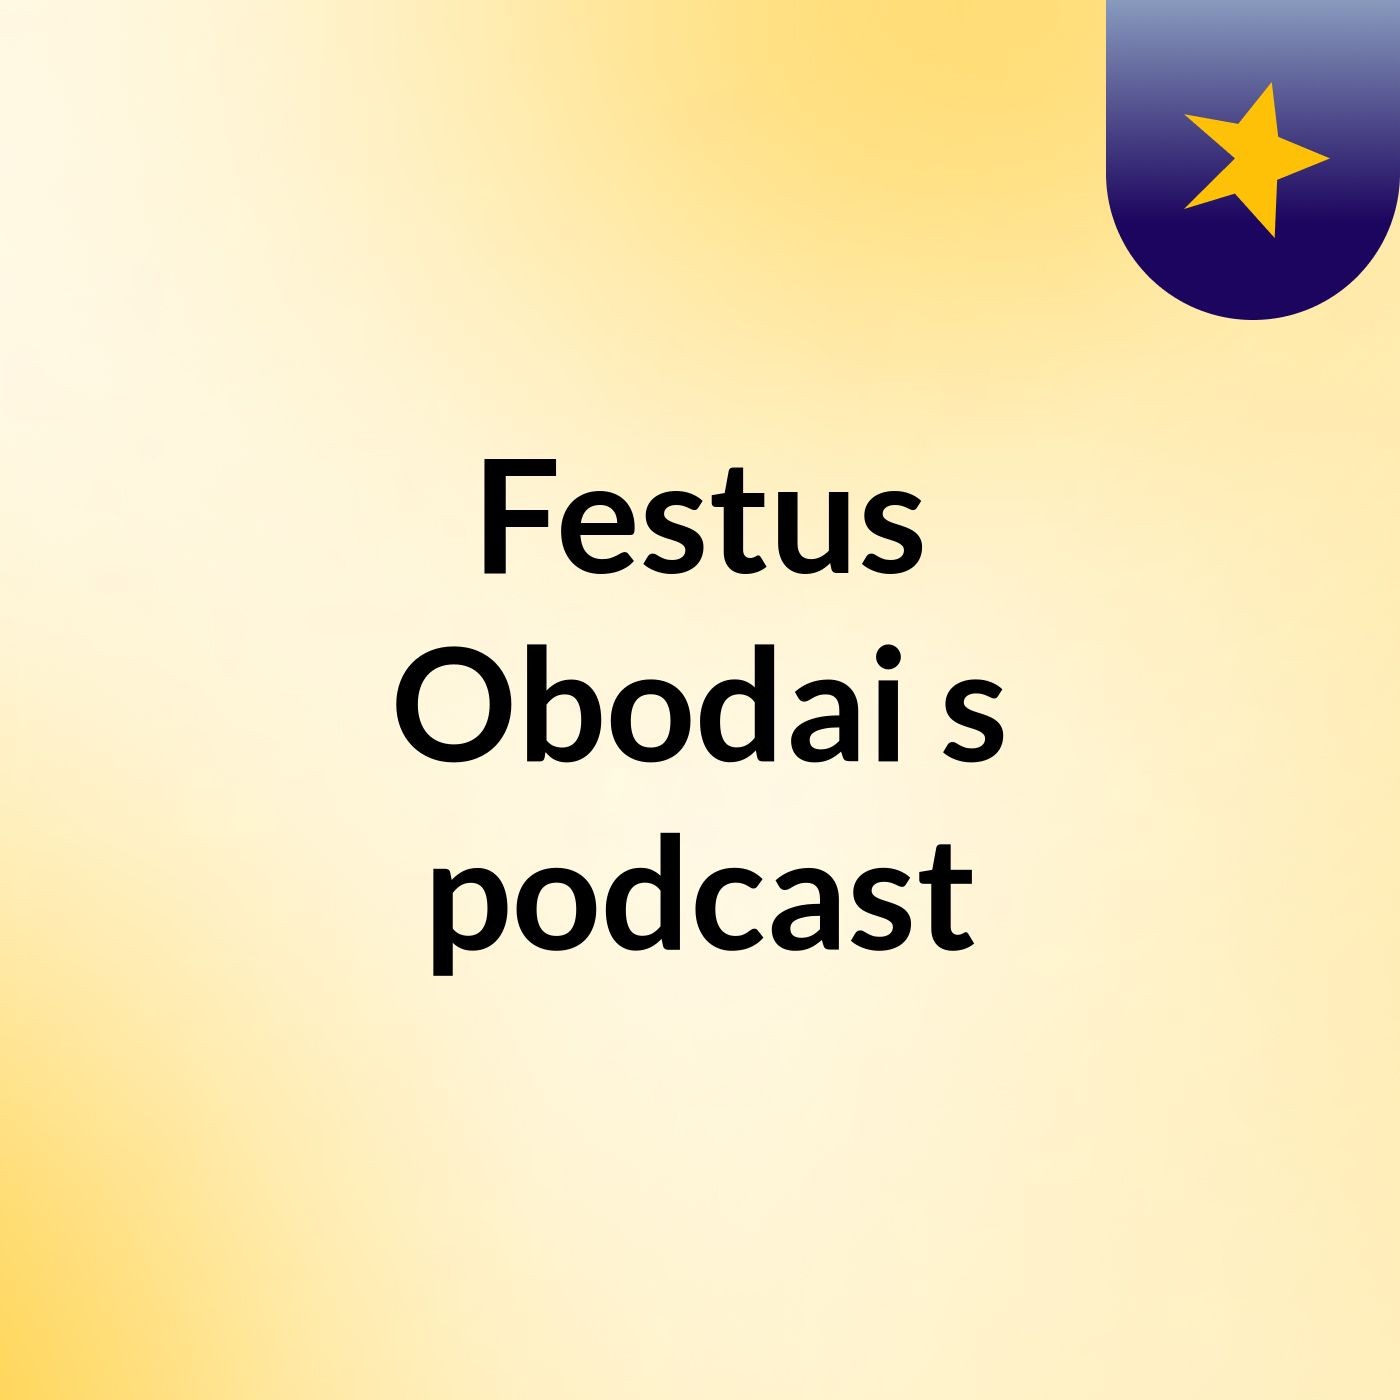 Episode 4 - Festus Obodai's podcast